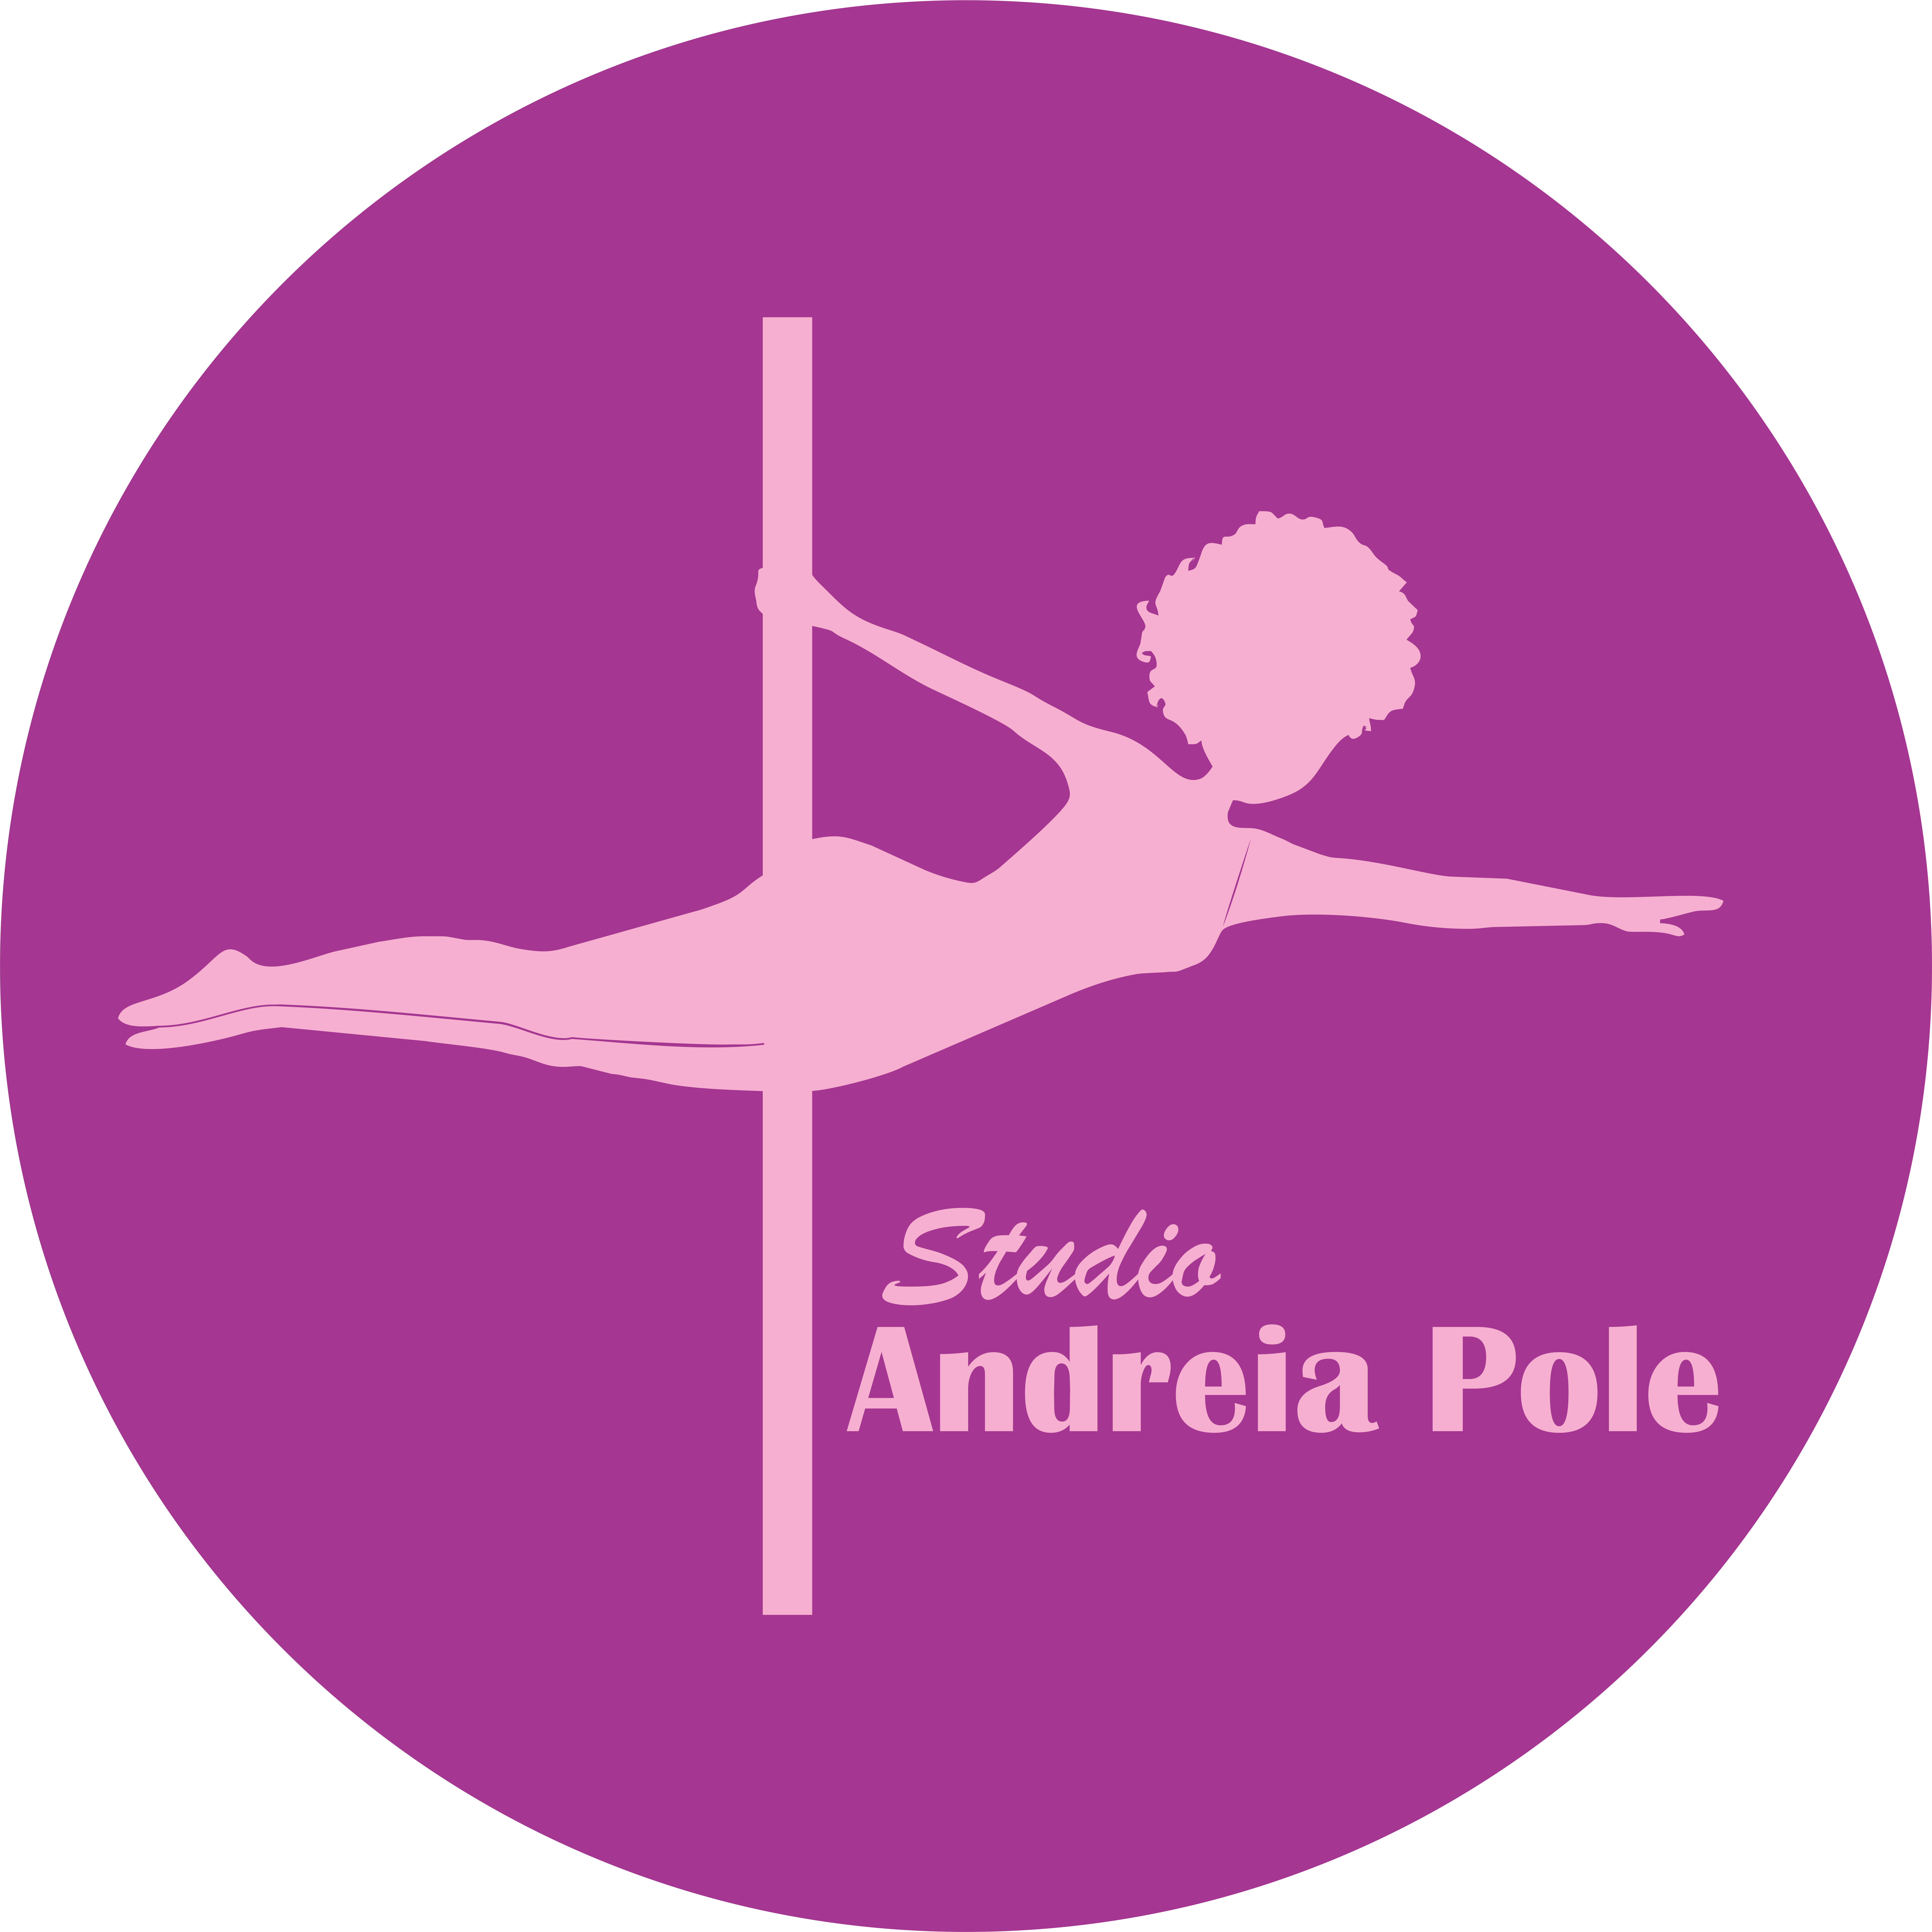 Andréia Pole